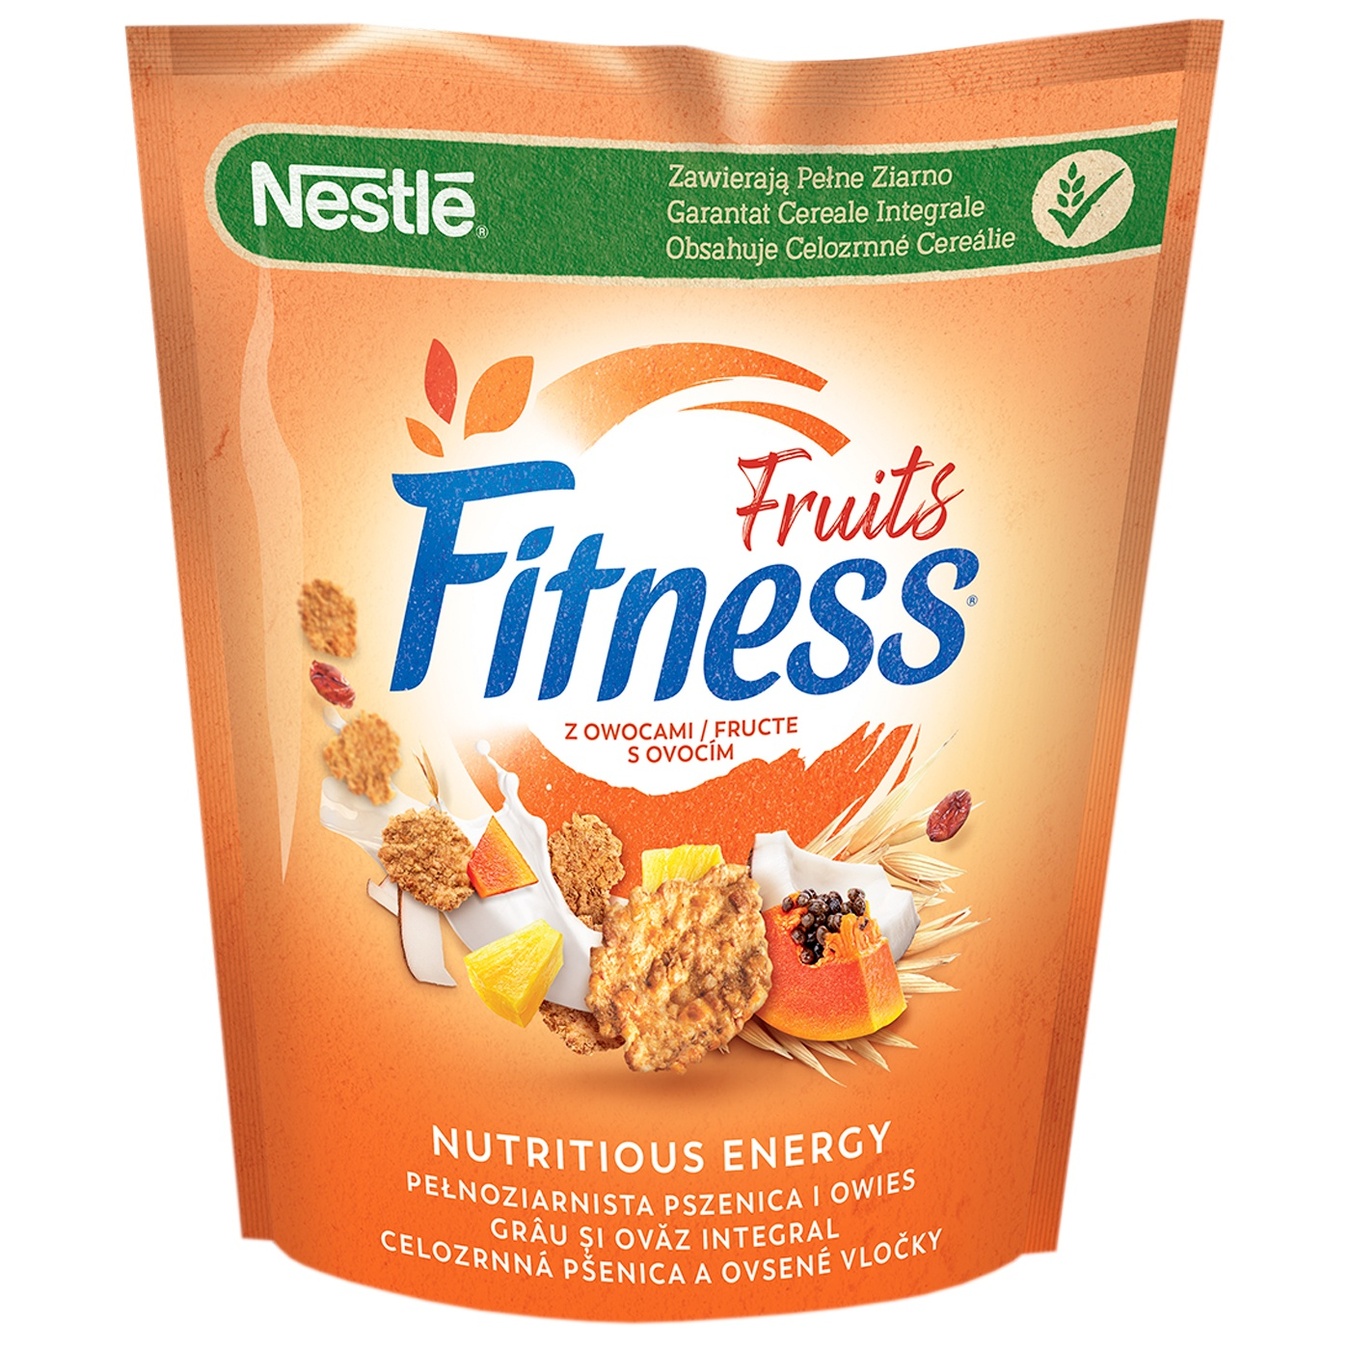 Готовый сухой завтрак Nestle Fitness & Fruits из цельнозерновой пшеницы с фруктами 225г